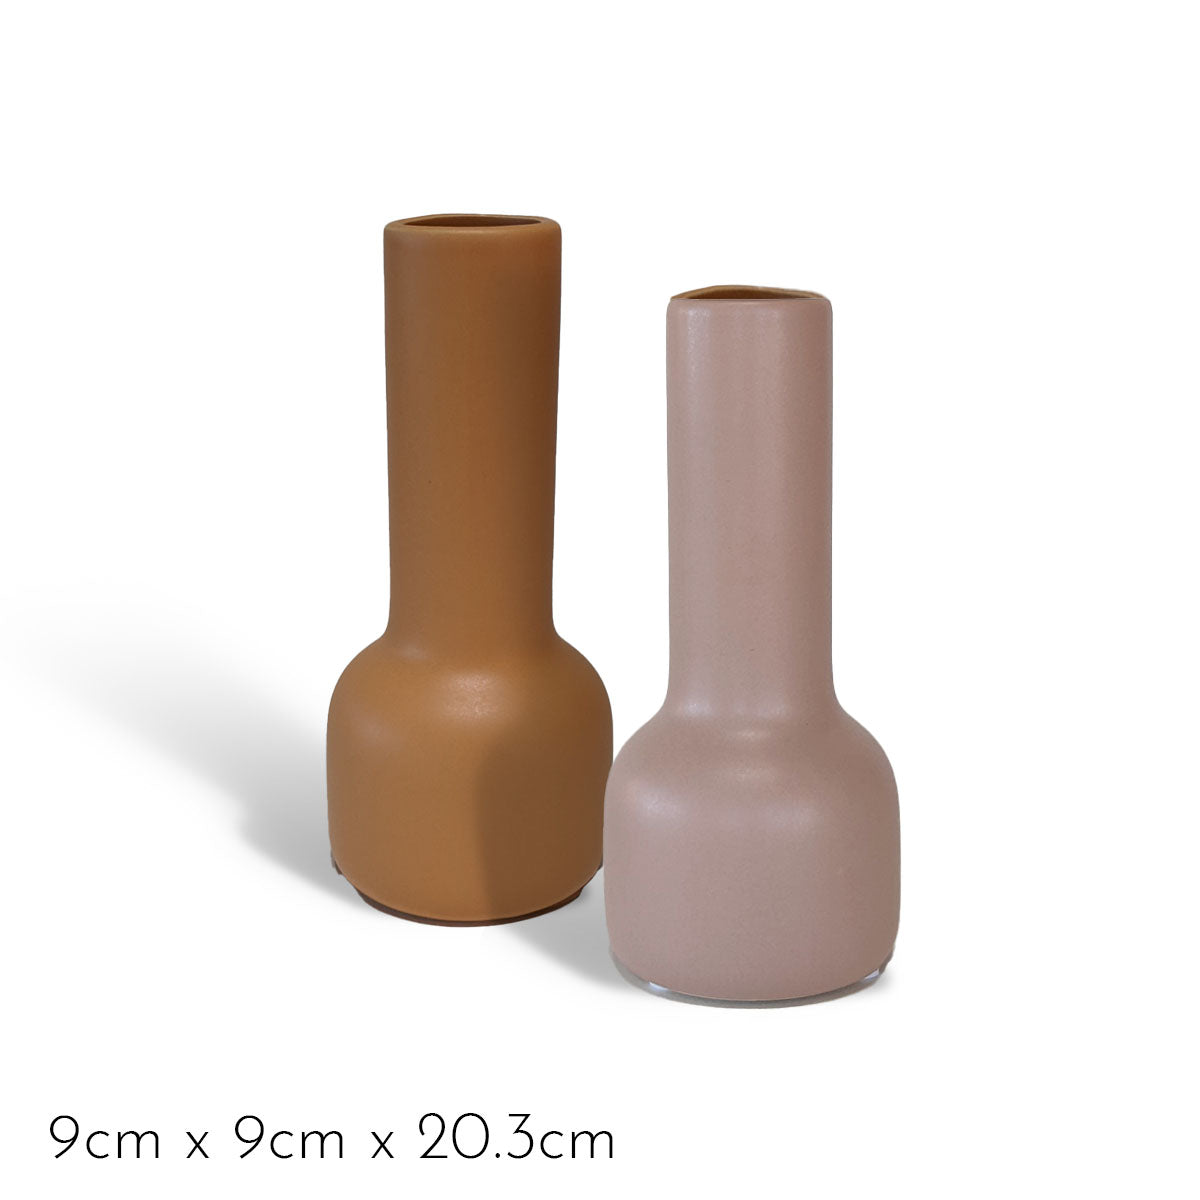 Bottom Heavy Ceramic Vase DB Studio